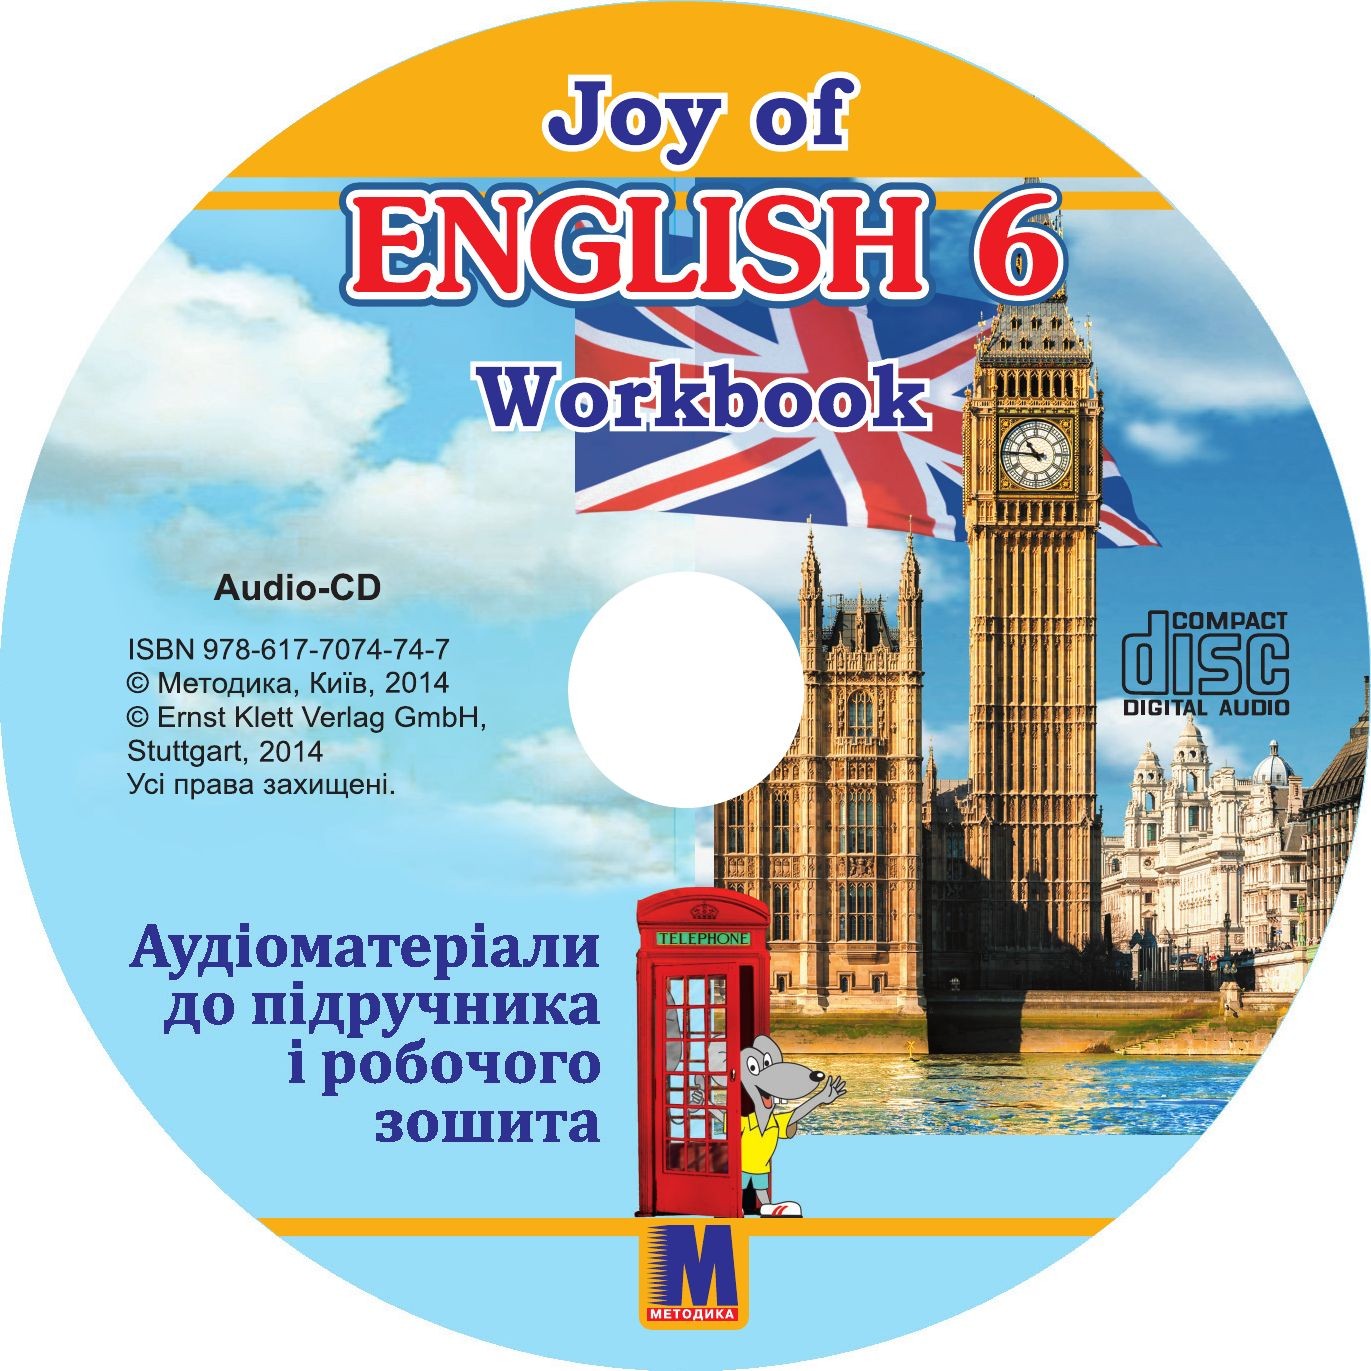 Т  Пахомова Joy of English 6  Аудіоматеріали підручника і робочого зошита для 6 го класу ЗНЗ 2 й рік навч  2 га іноз  мова  2 з аудіо CD